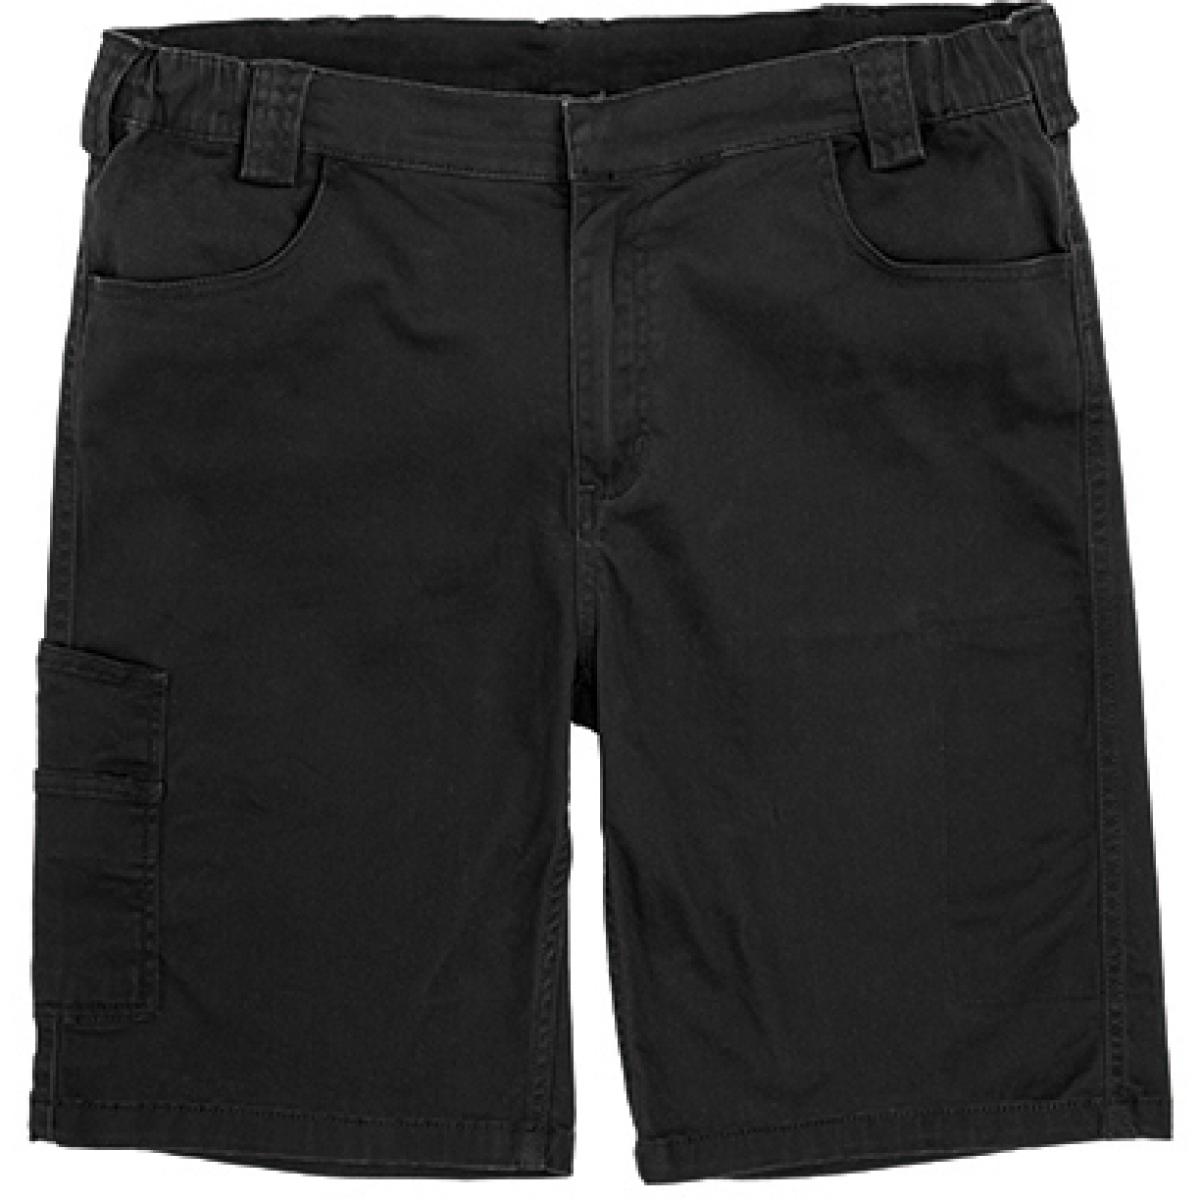 Hersteller: WORK-GUARD Herstellernummer: R471X Artikelbezeichnung: Arbeitshose Super Stretch Slim Chino Shorts Farbe: Black